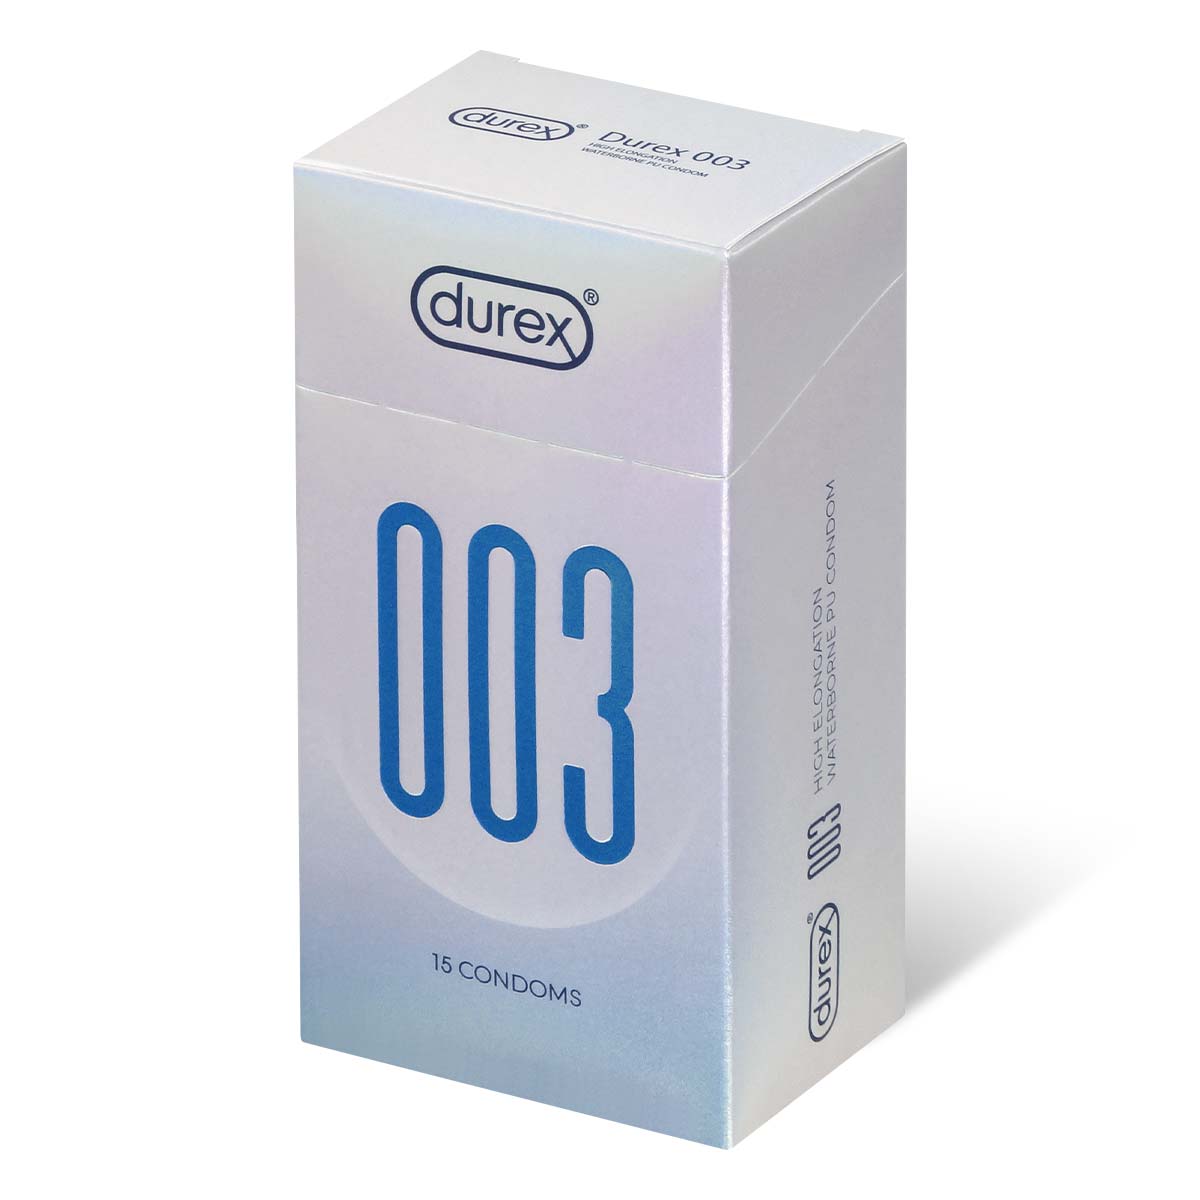 Durex 003 15's Pack High Elongation Waterborne Polyurethane Condom-p_1